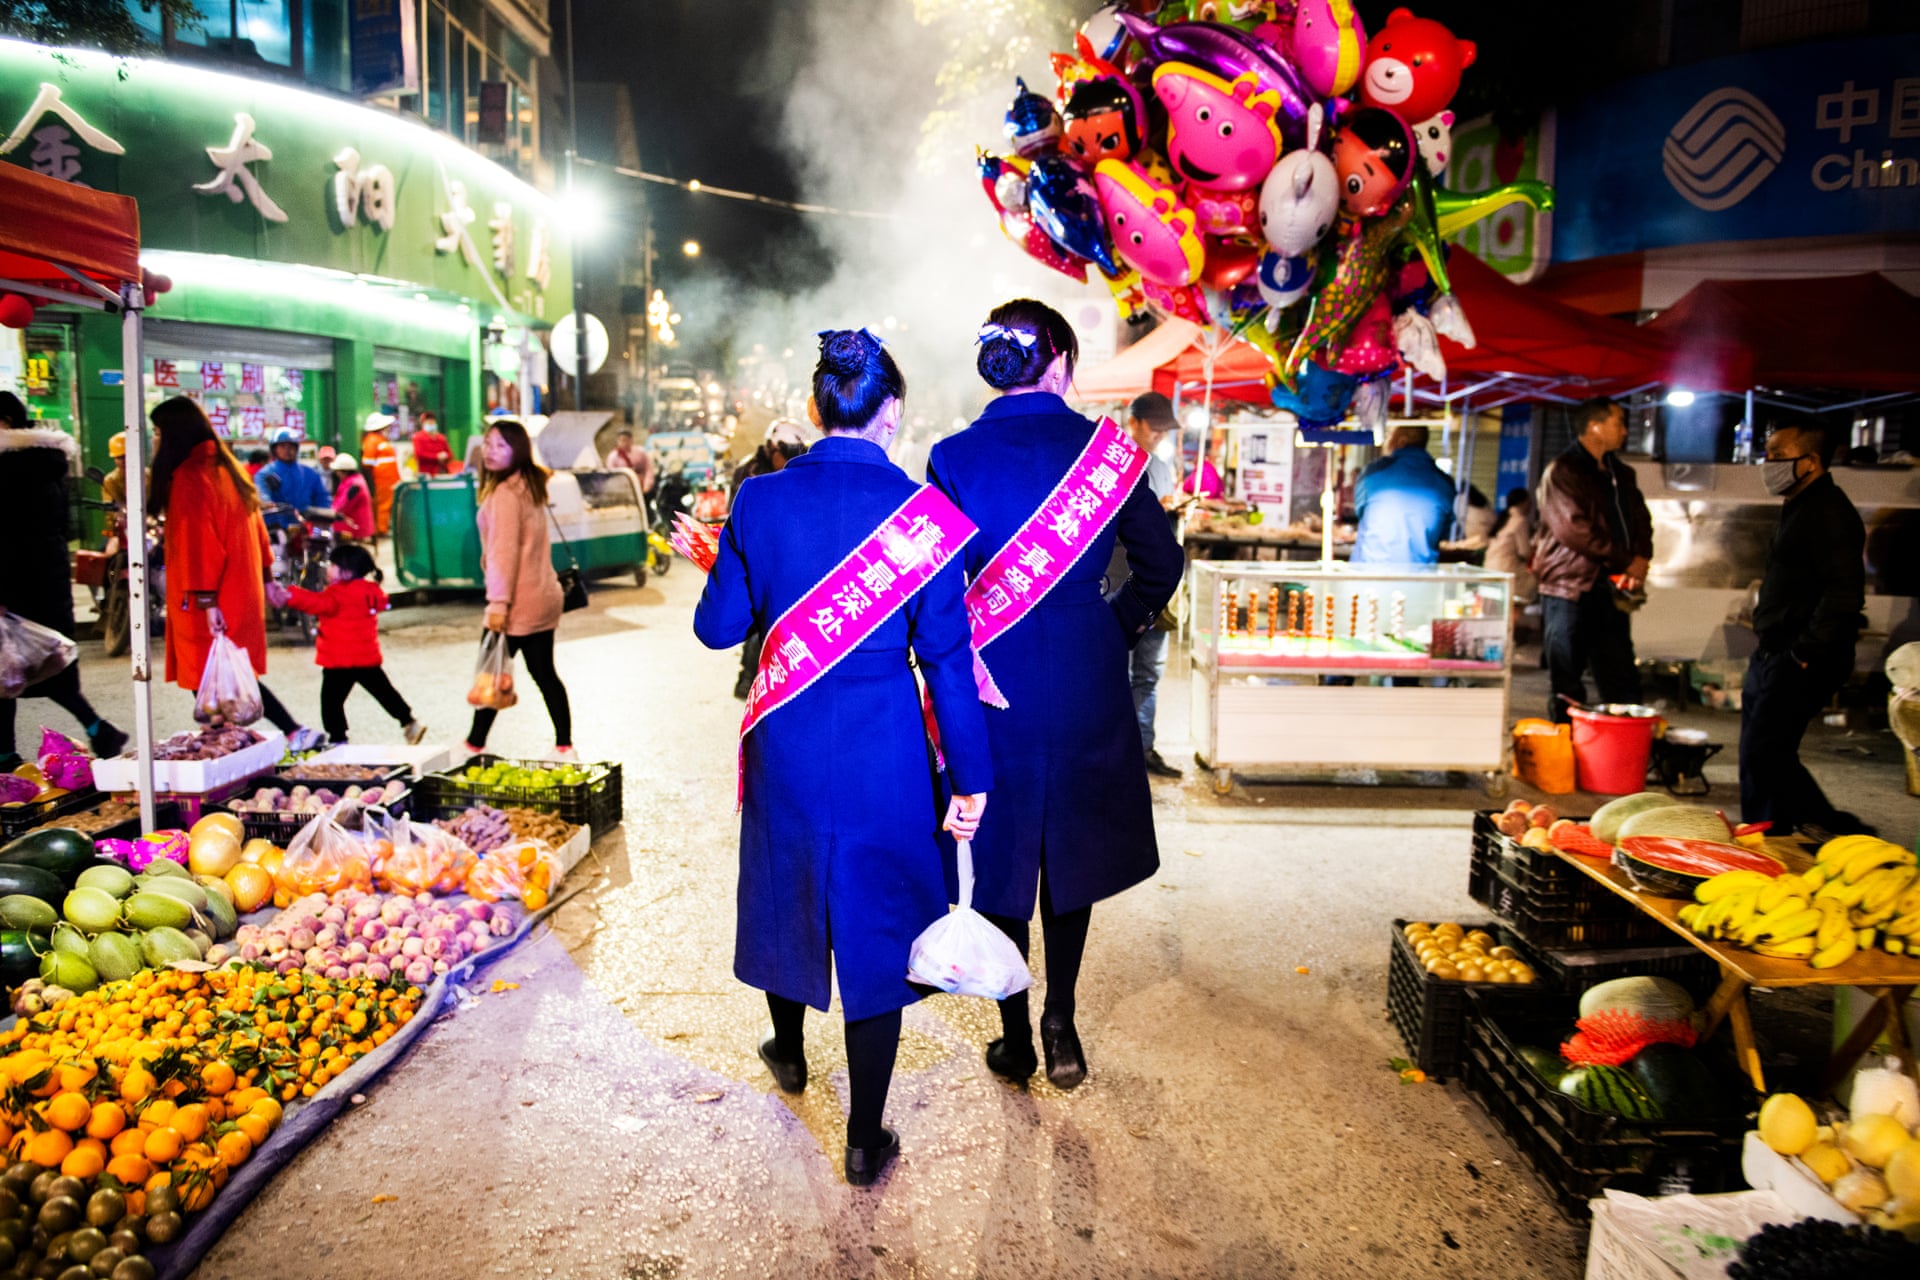 موجیانگ در استان یونان، چین منطقه ای است که نرخ دوقلو بودن در آن بسیار بالاتر از دیگر نقاط جهان است و هر ساله یک فستیوال برای دوقلوها در آن برگزار می شود.